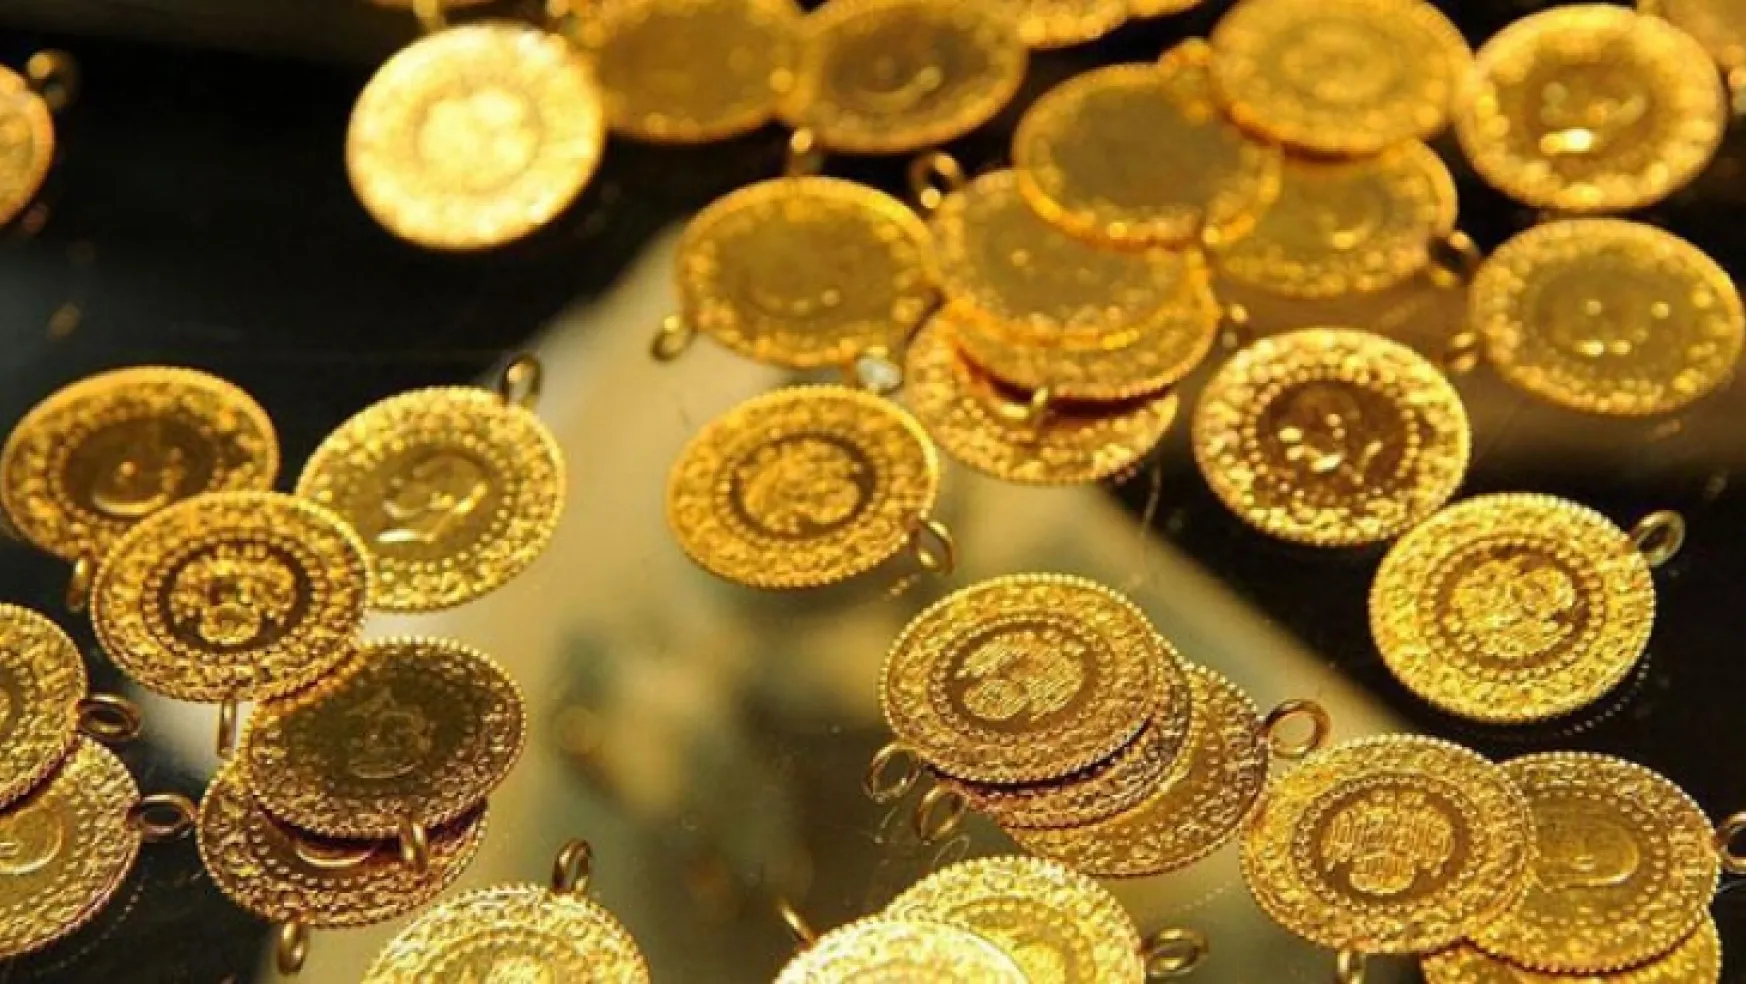 Doları takip eden altın fiyatları da yükselişe geçti